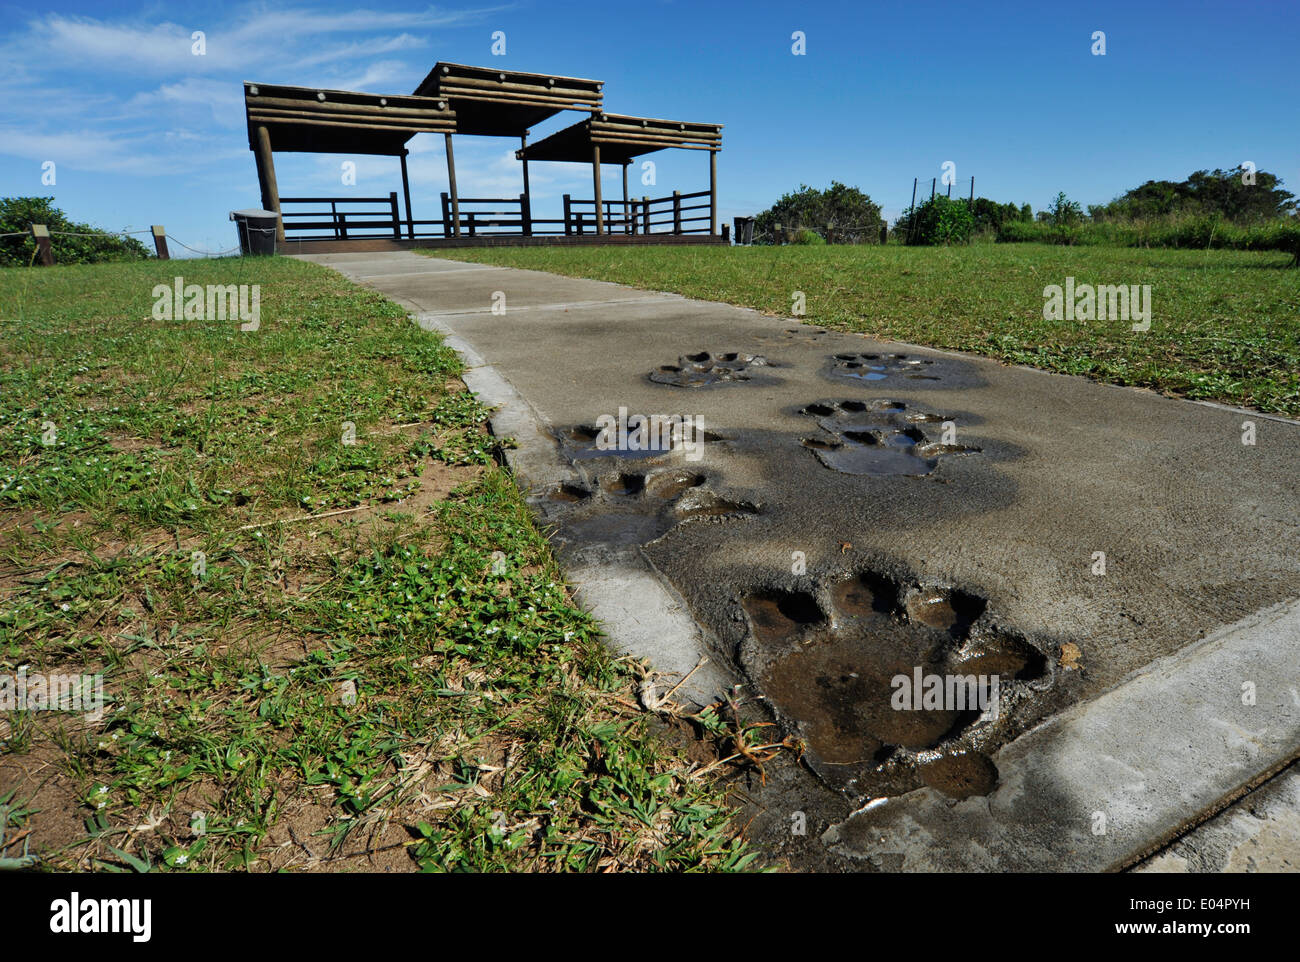 St Lucia, KwaZulu-Natal, Afrique du Sud, les voies dans le béton d'hippopotames chemin menant à vew point, Eastern Shores, zone humide d'iSimangaliso, safari Banque D'Images